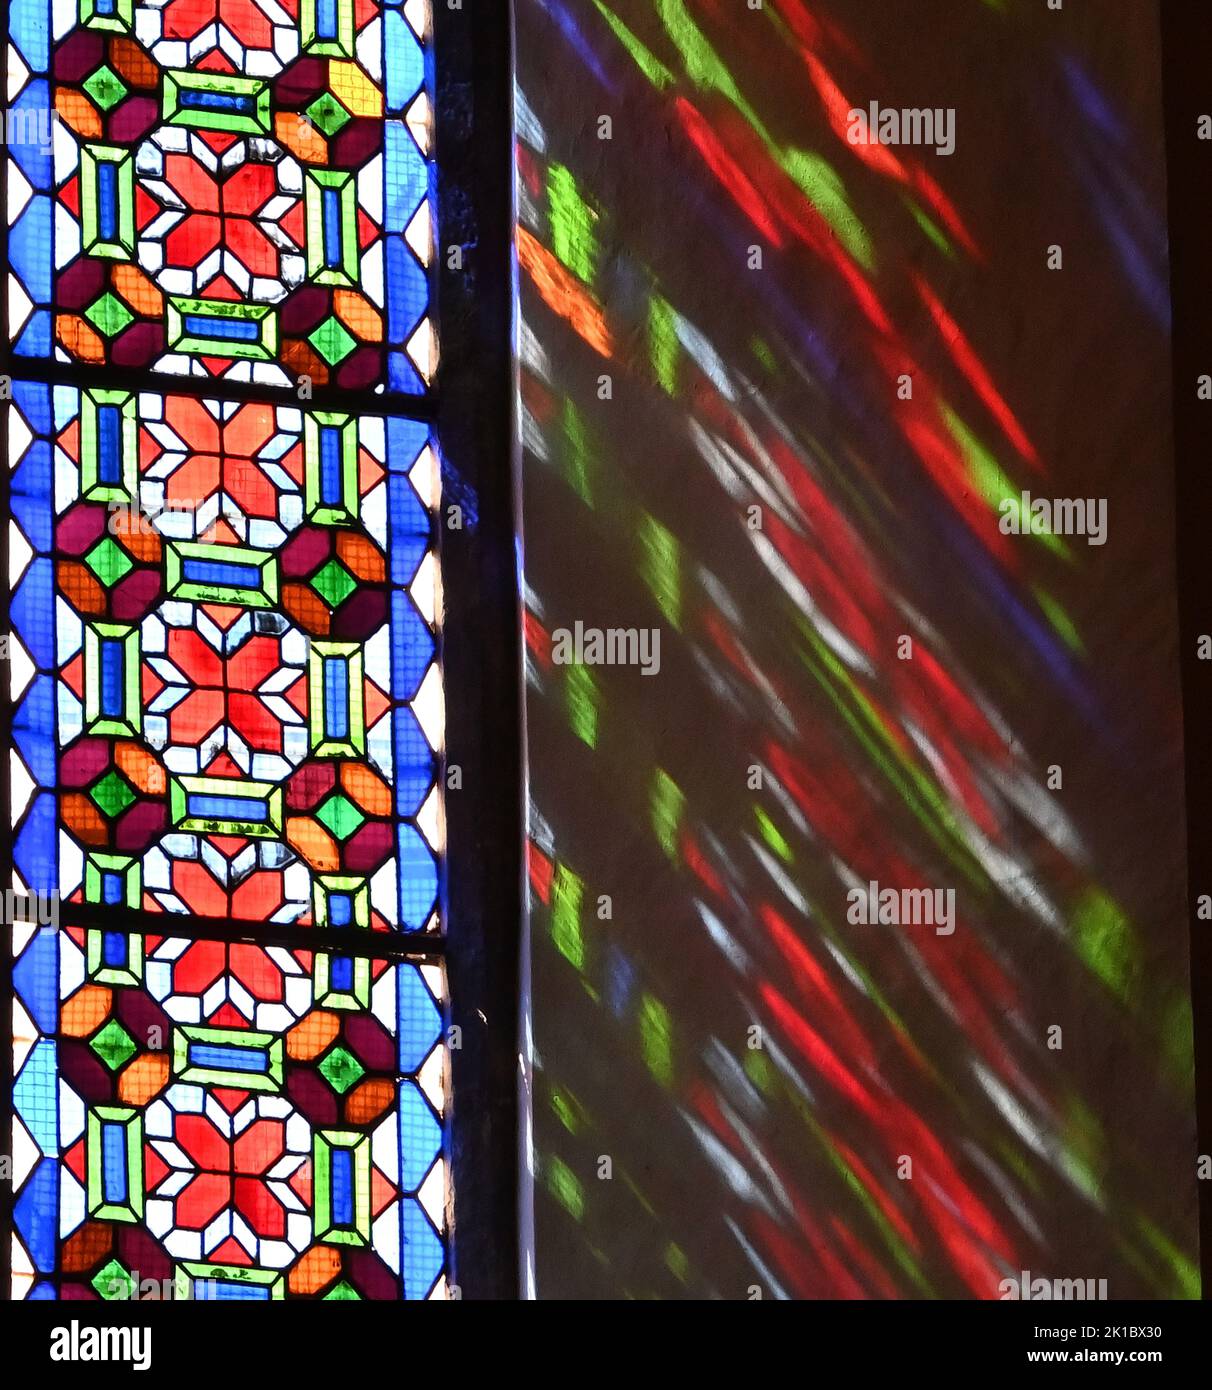 Buntes Licht wird im Kirchenfenster reflektiert. Stock Photo